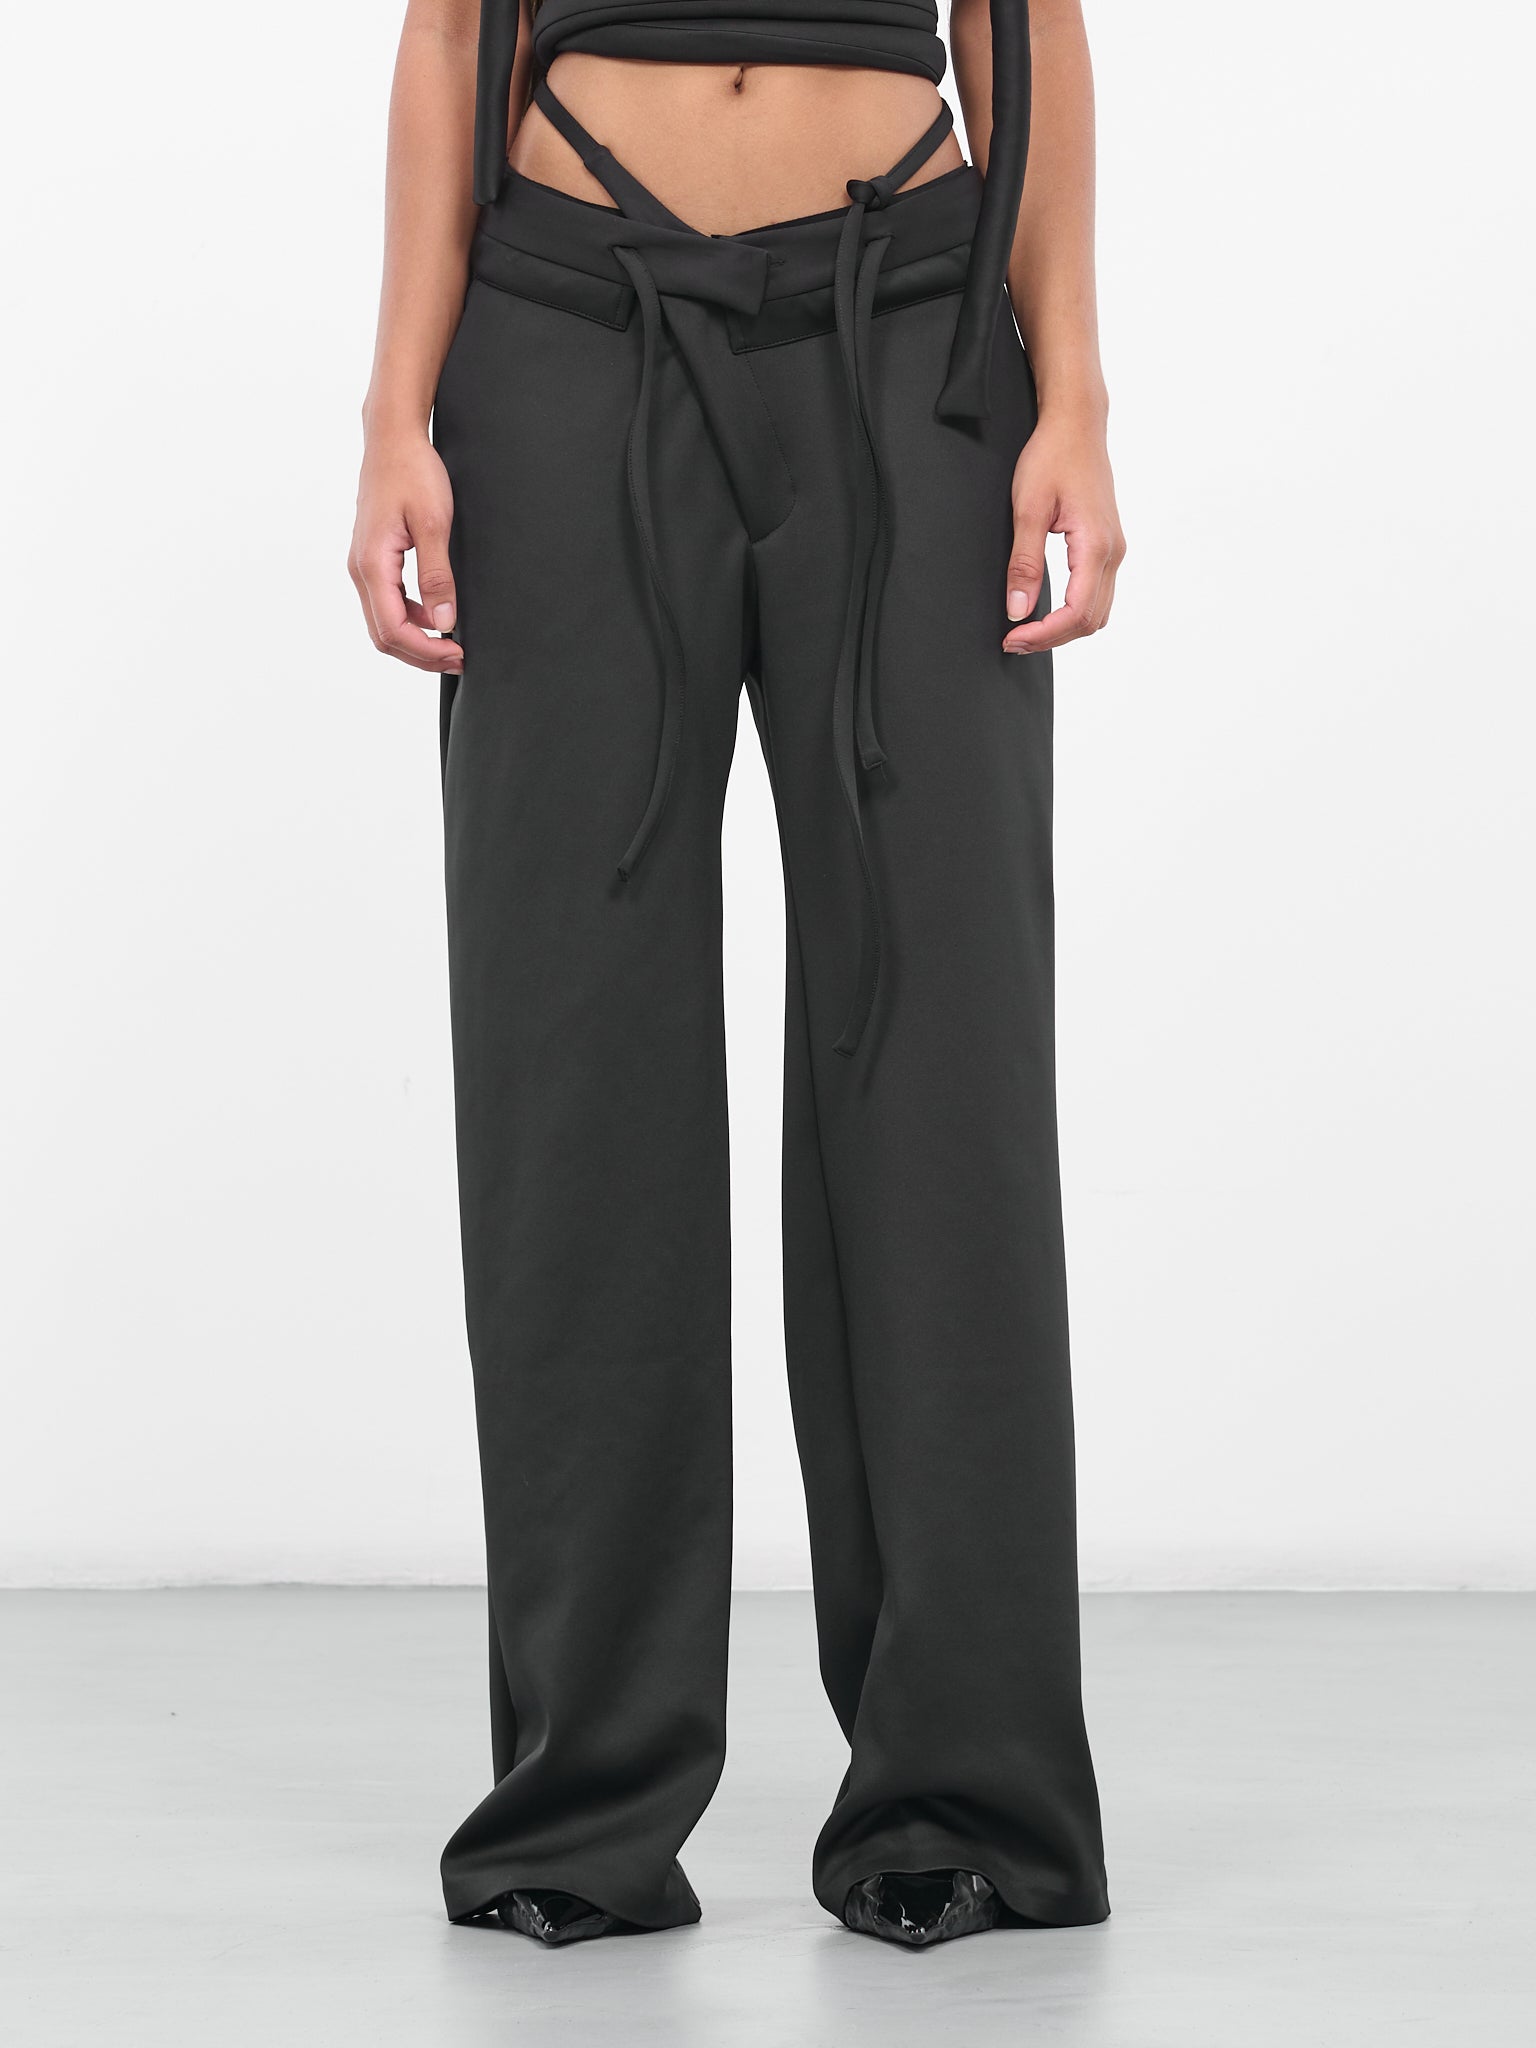 Lululemon Noir Crop Size 6 Black Pants High Waisted Belted Wide